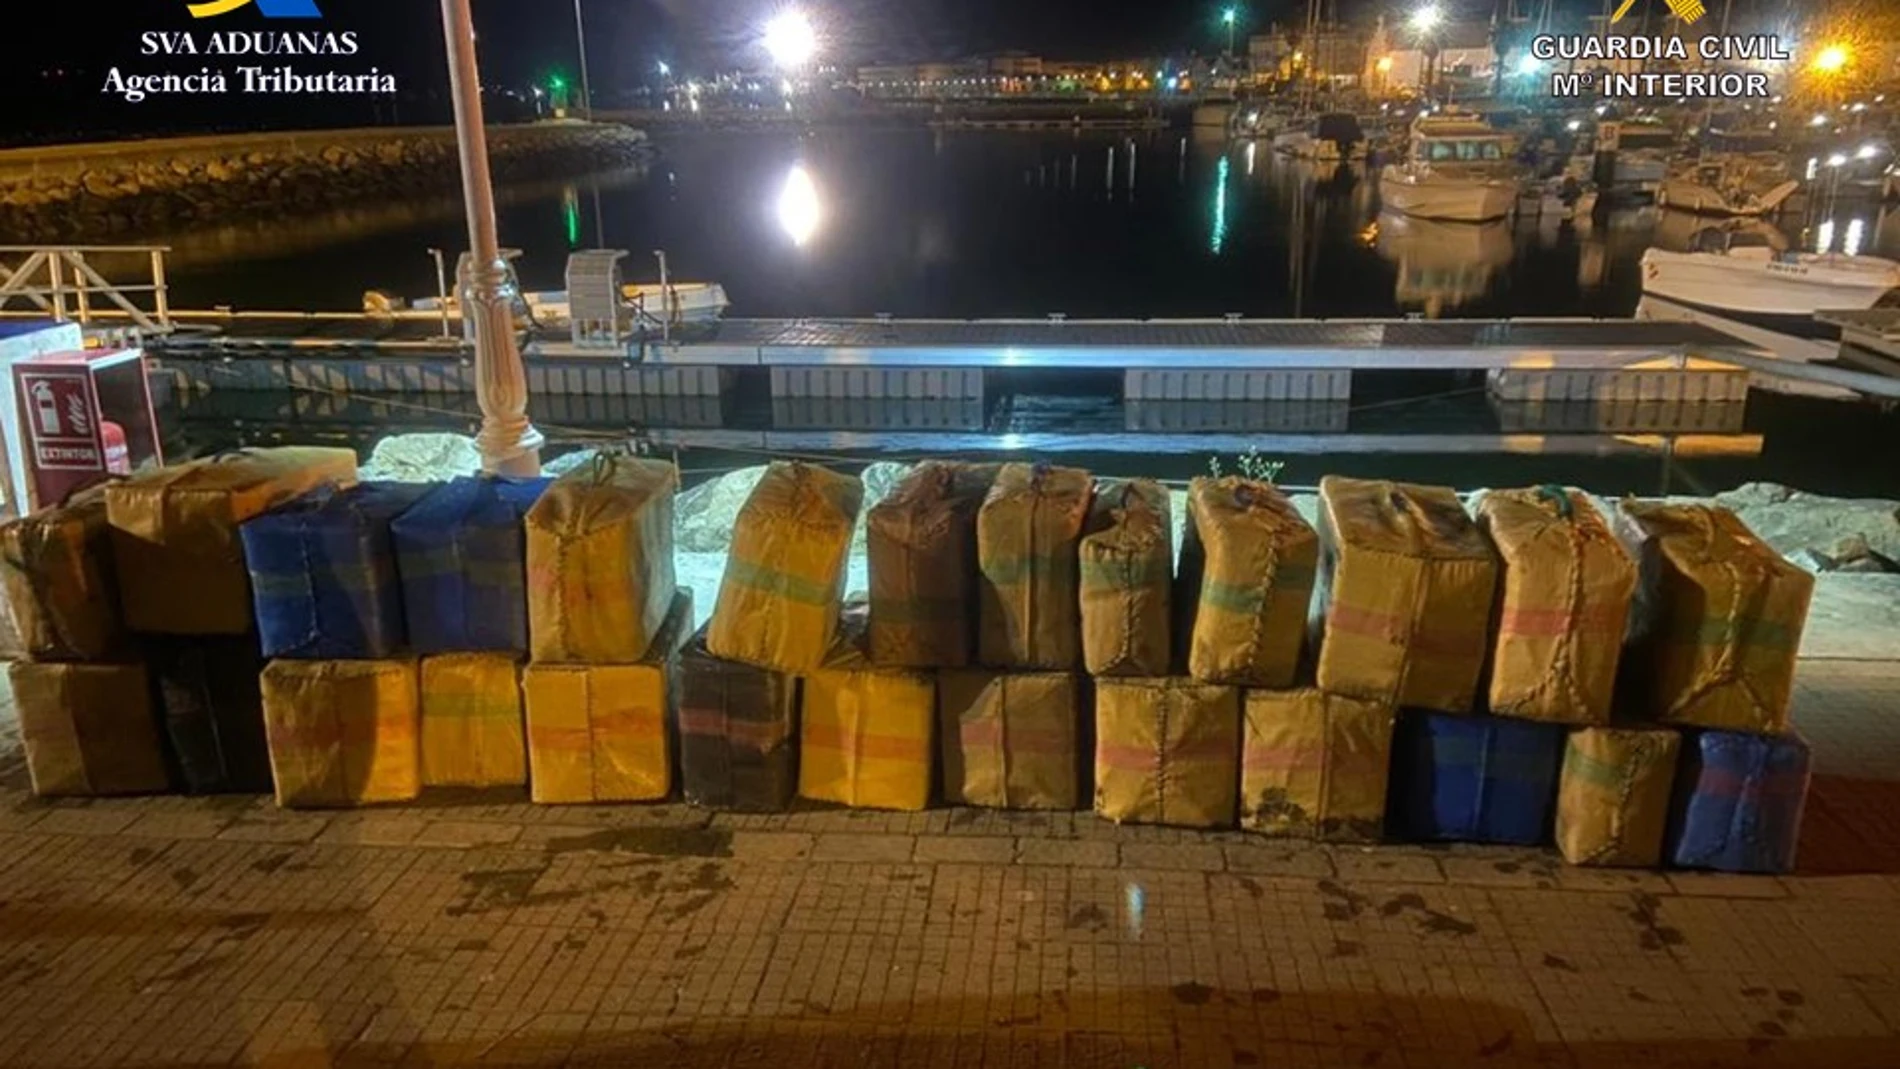 Imagen de parte del alijo de 4.000 kilos de hachís intervenido durante dos operaciones en menos de 24 horas en la costa de Huelva. EFE/Agencia Tributaria/Guardia Civil